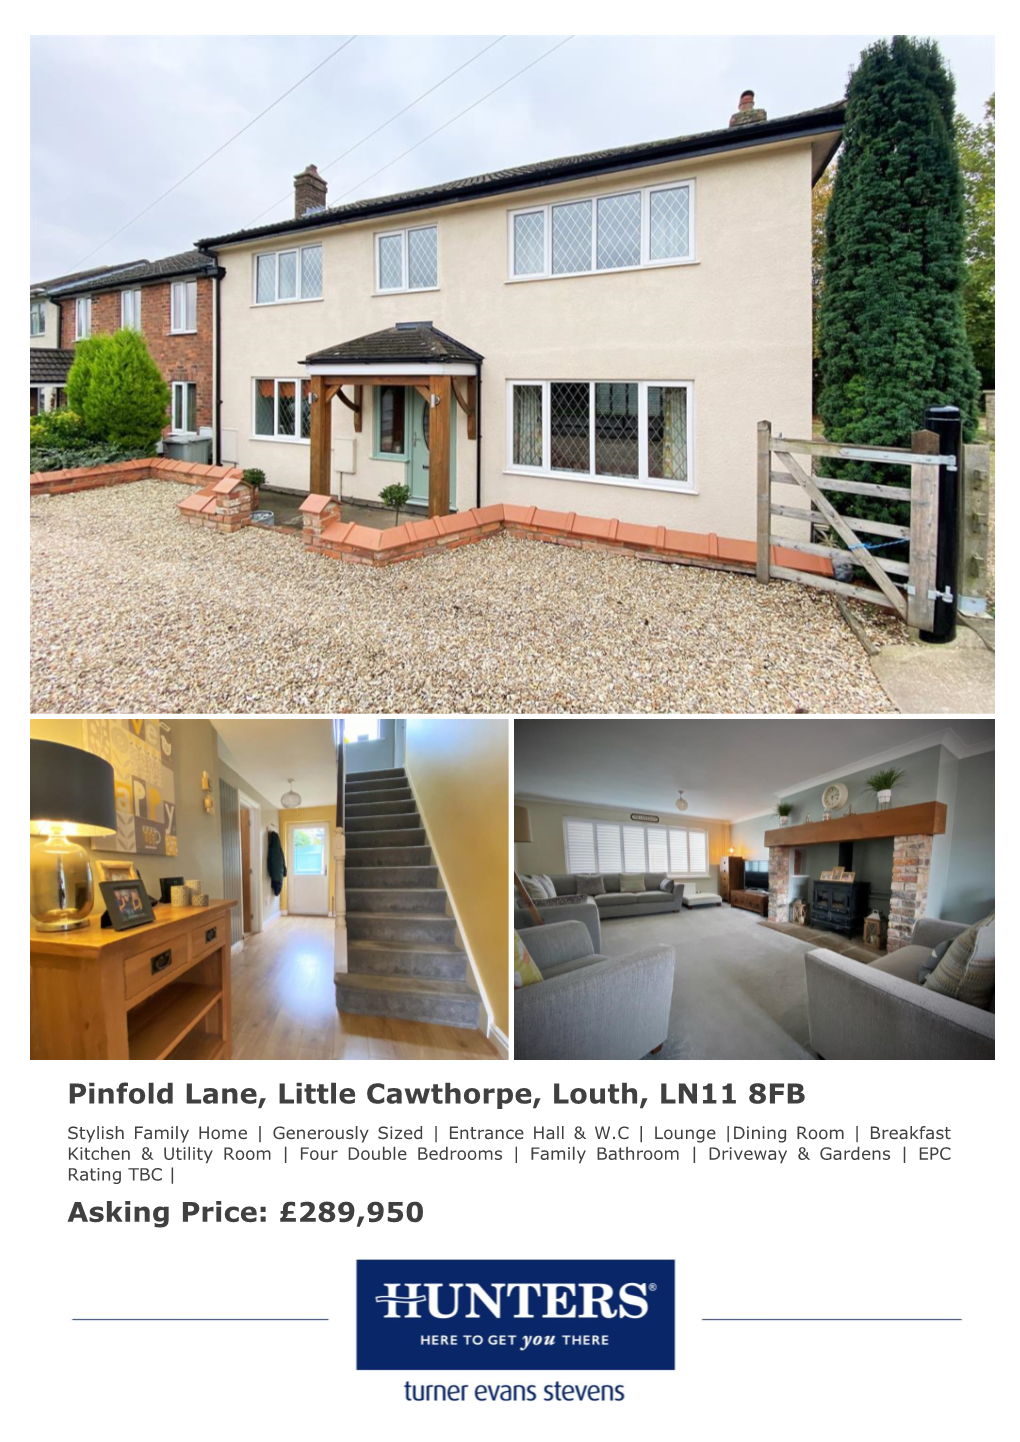 Pinfold Lane, Little Cawthorpe, Louth, LN11 8FB Asking Price: £289,950